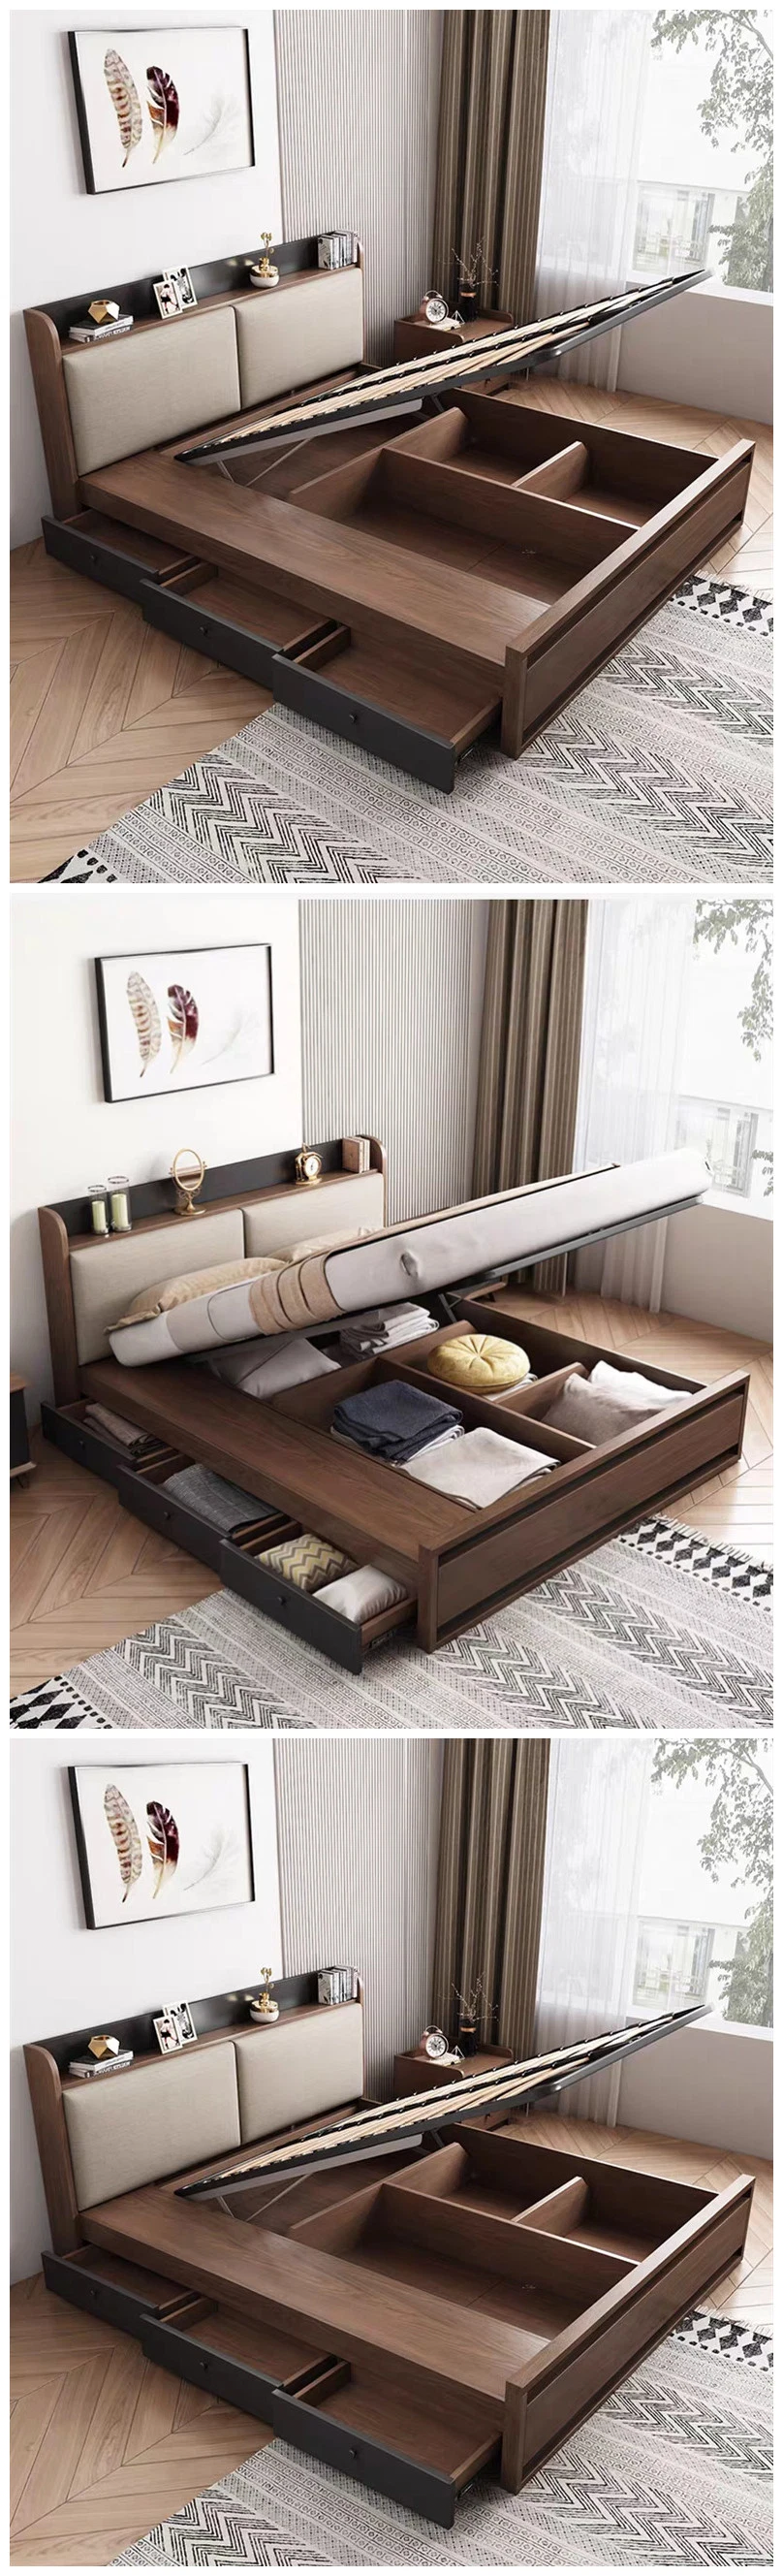 Modern Bedroom Furniture Set Modern New Luxury Hotel Design Black Color Commercial Bedroom Furniture Supplier for Sale